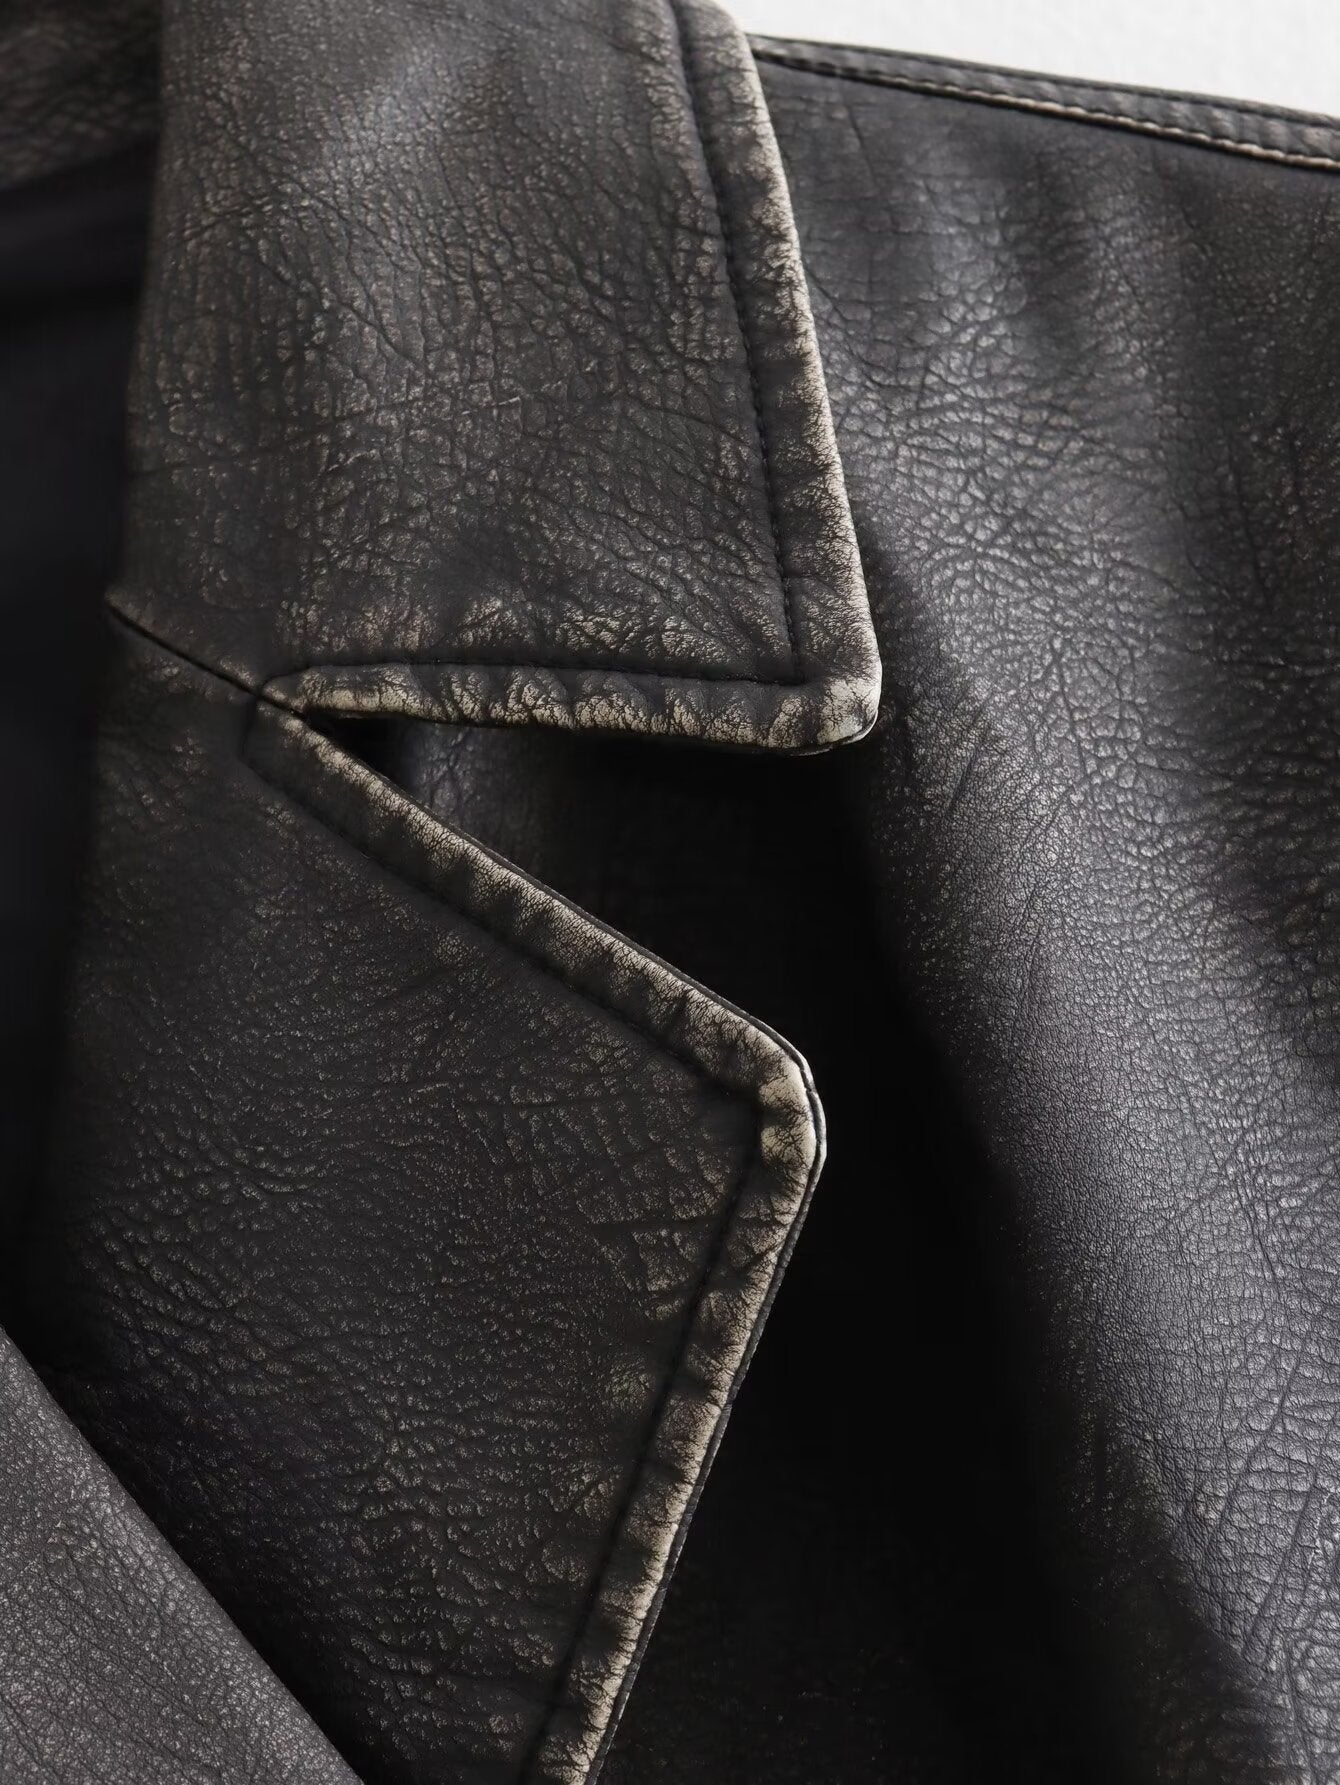 Street Air Outlet Pocket Decoration Faux Leather Collared Vest Autumn Winter Oblique Placket Zipper Short Casual Vest